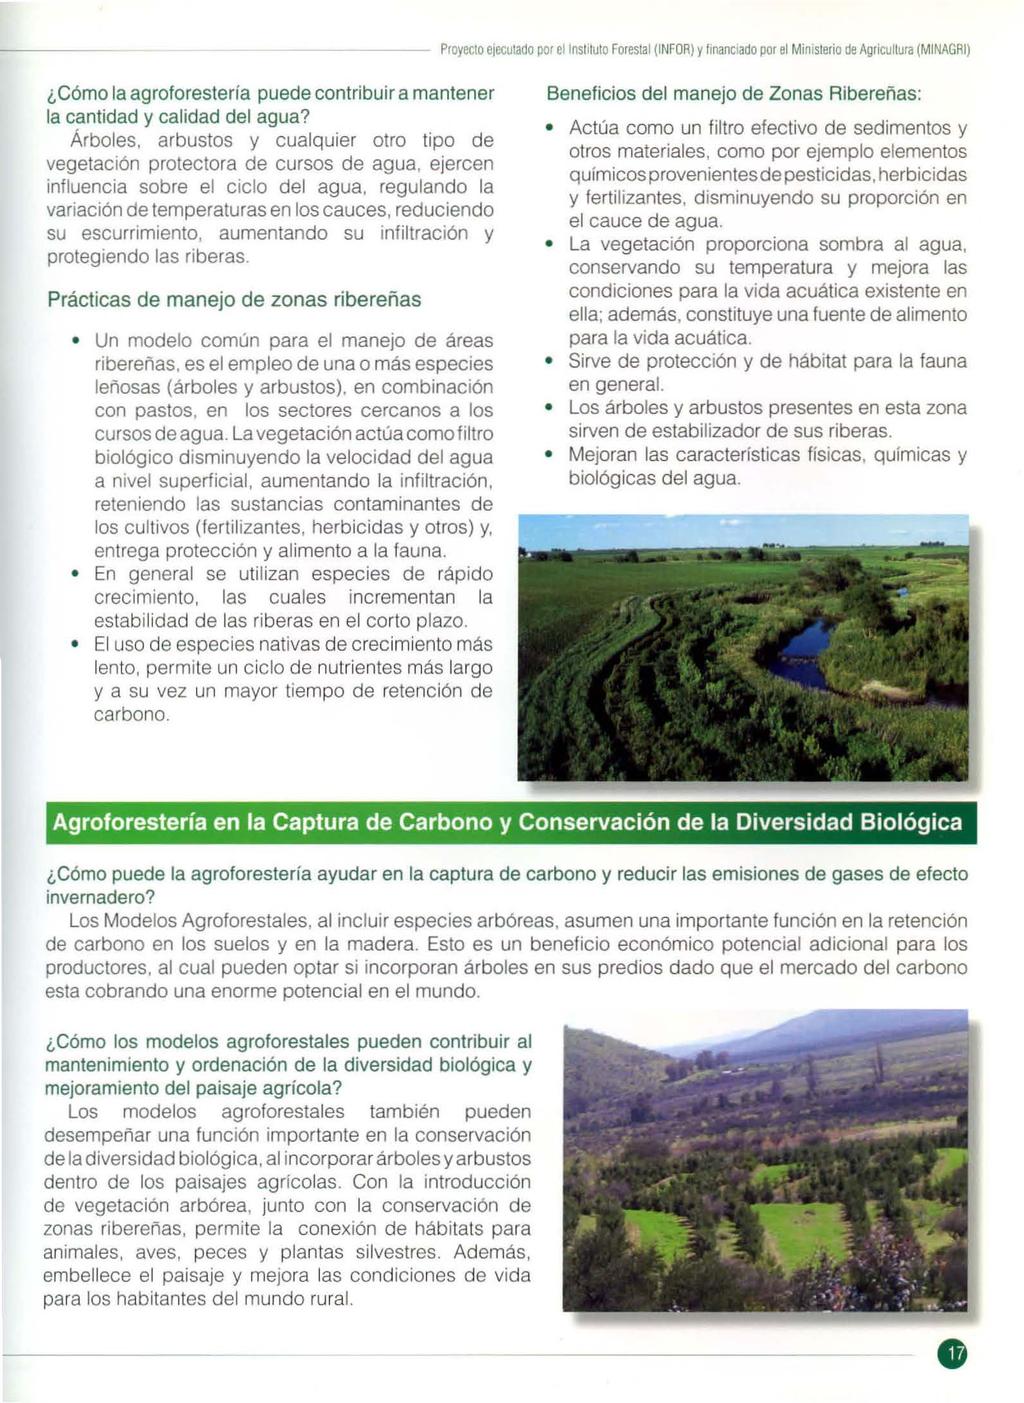 ---- Proyecto ejecutado por ellnsl1lulo forestal (INFOR) y financiado por el Ministerio de Agricultura (MINAGRI) Cómo la agroforestería puede contribuir a mantener la cantidad y calidad del agua?